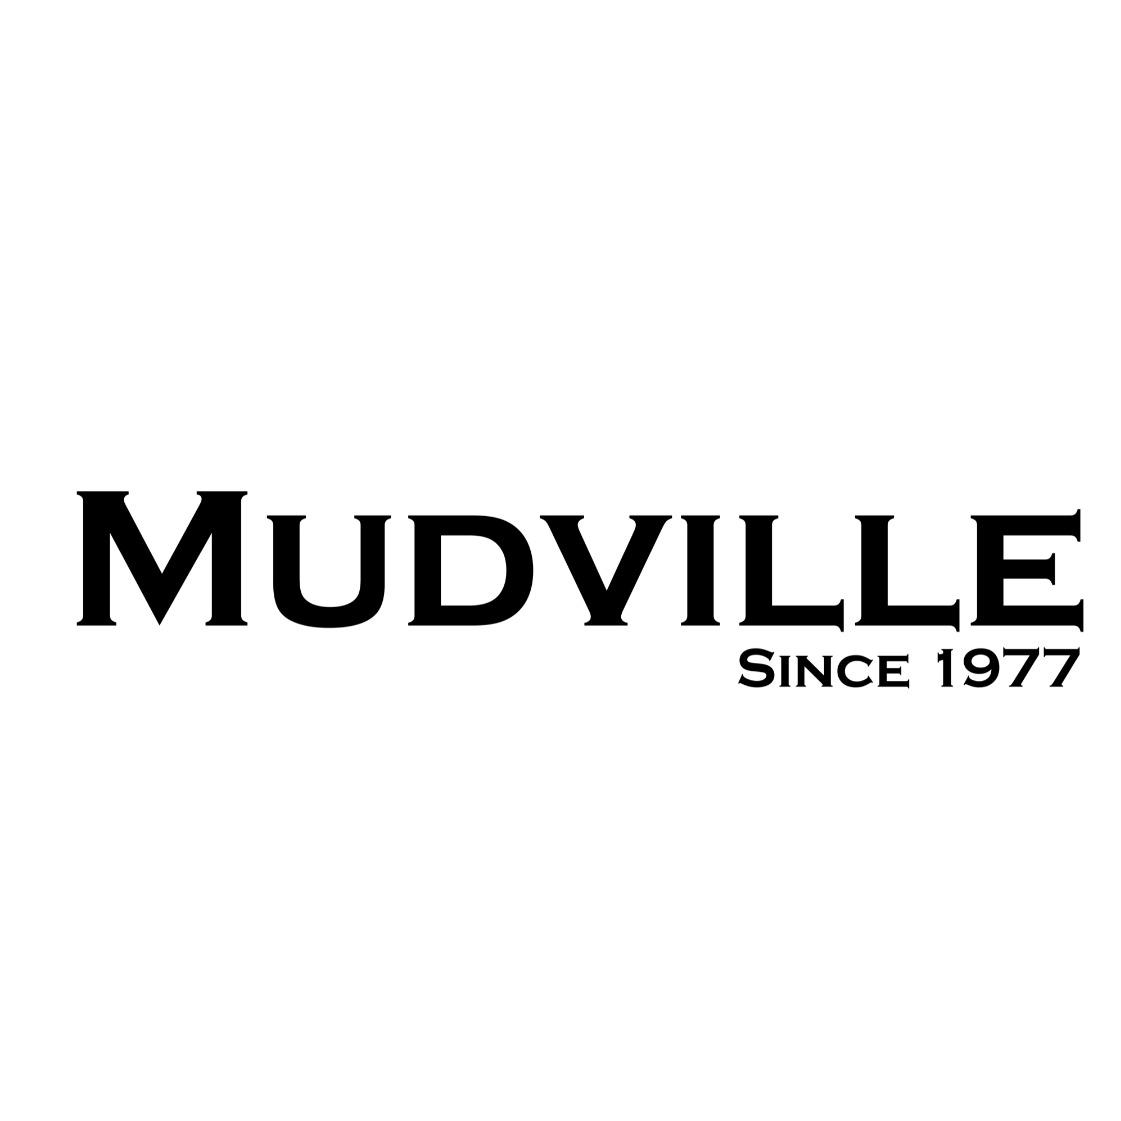 Mudville9